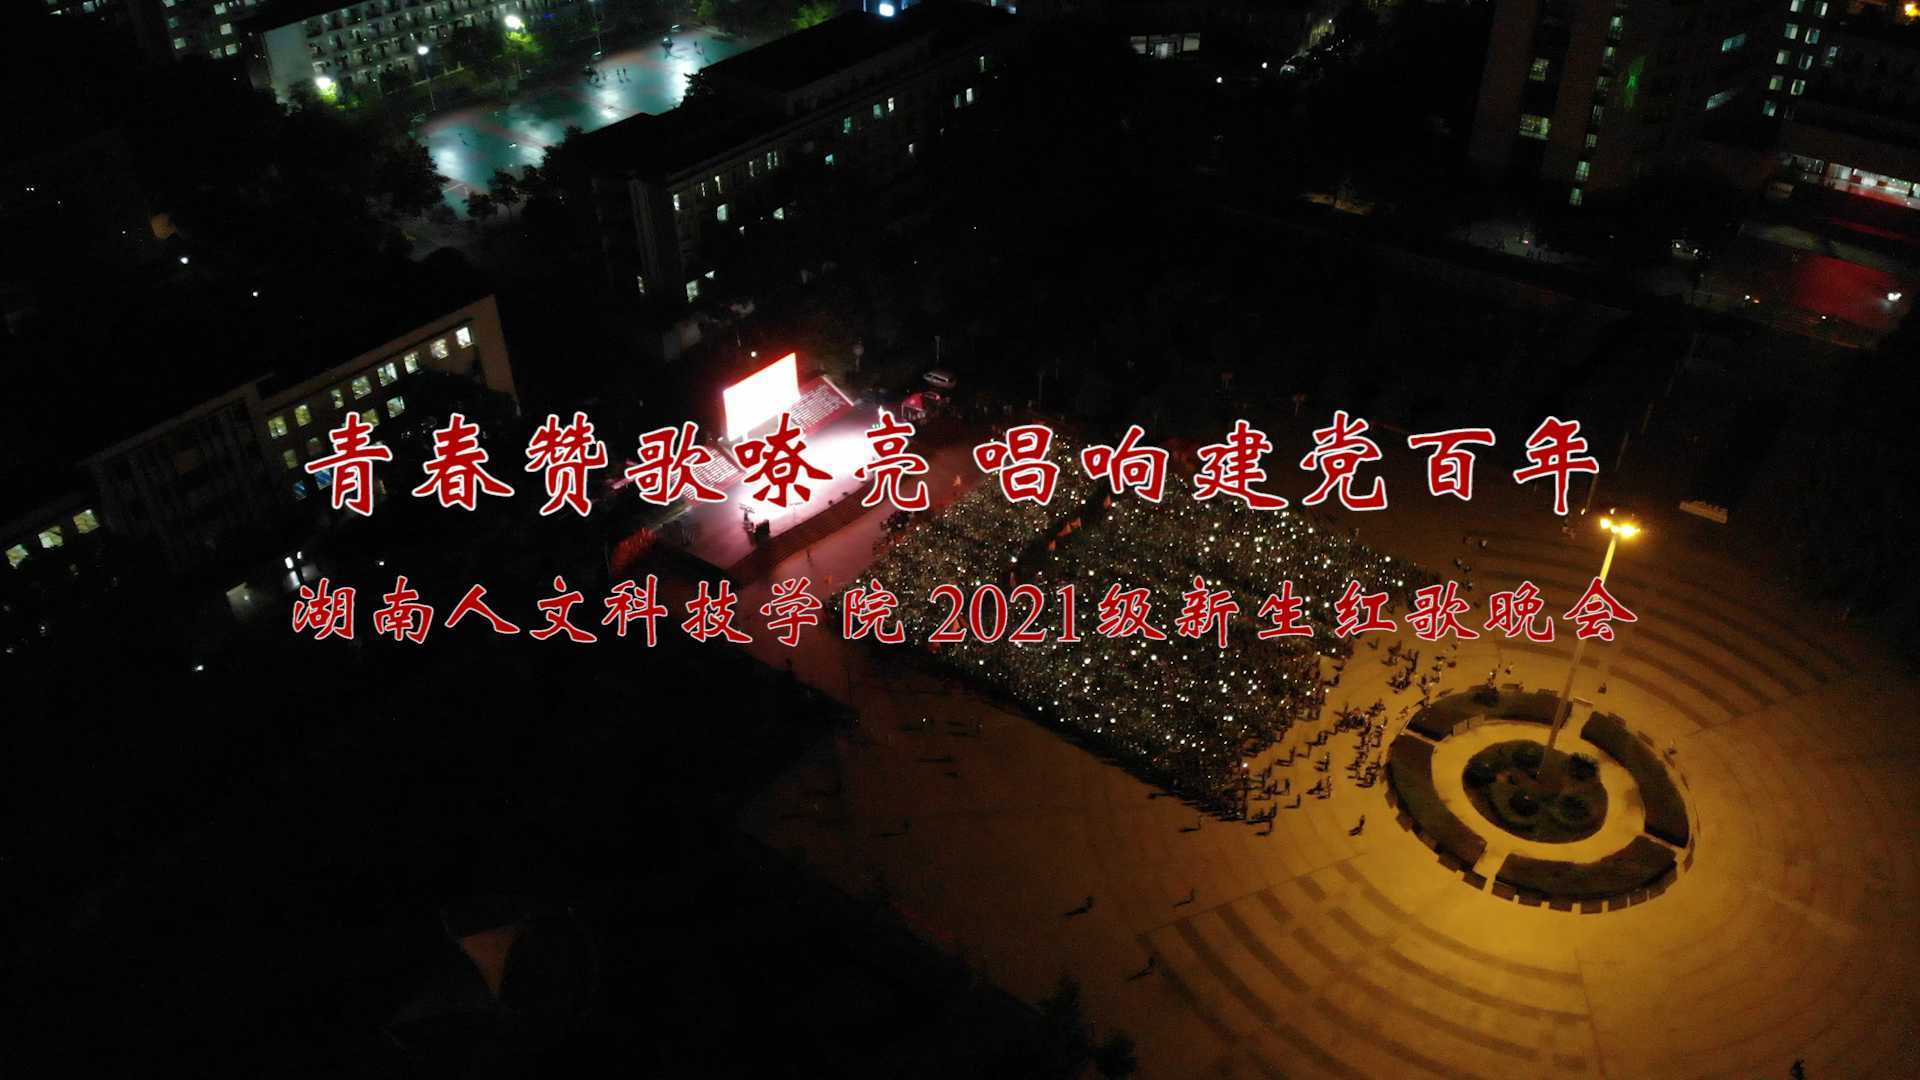 青春赞歌嘹亮 唱响建党百年——湖南人文科技学院2021级新生红歌晚会